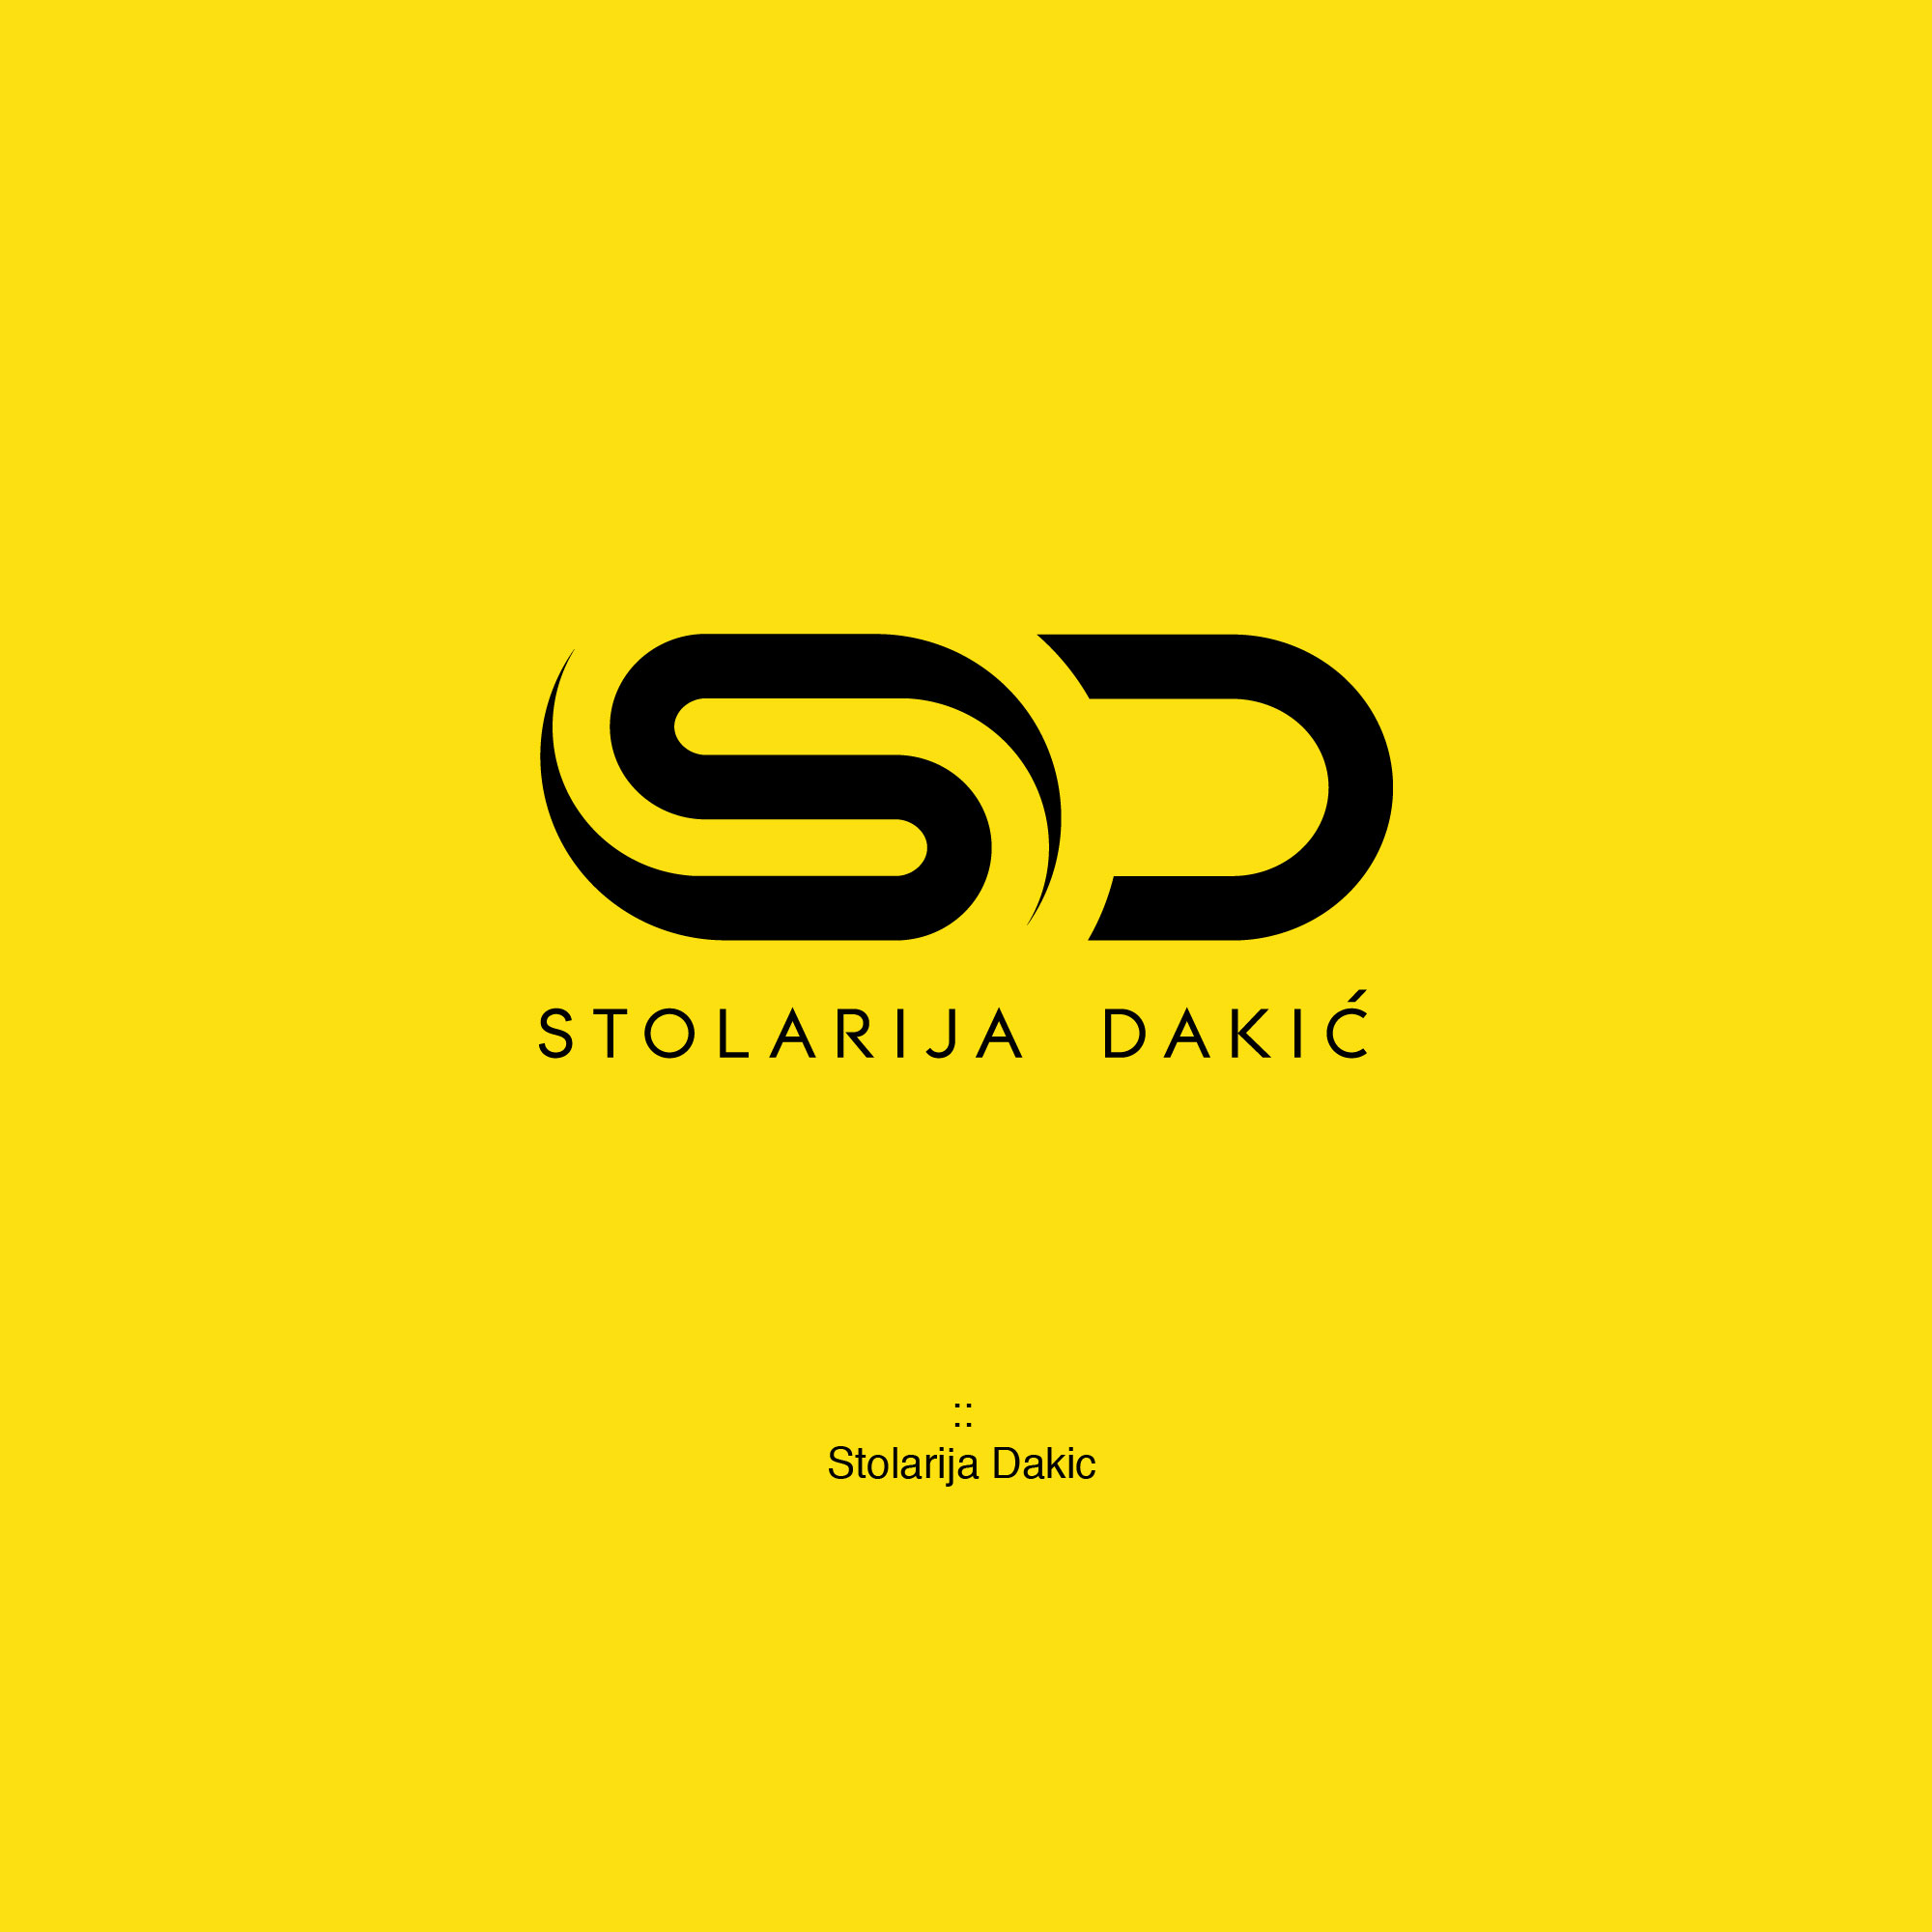 Stolarija Dakic